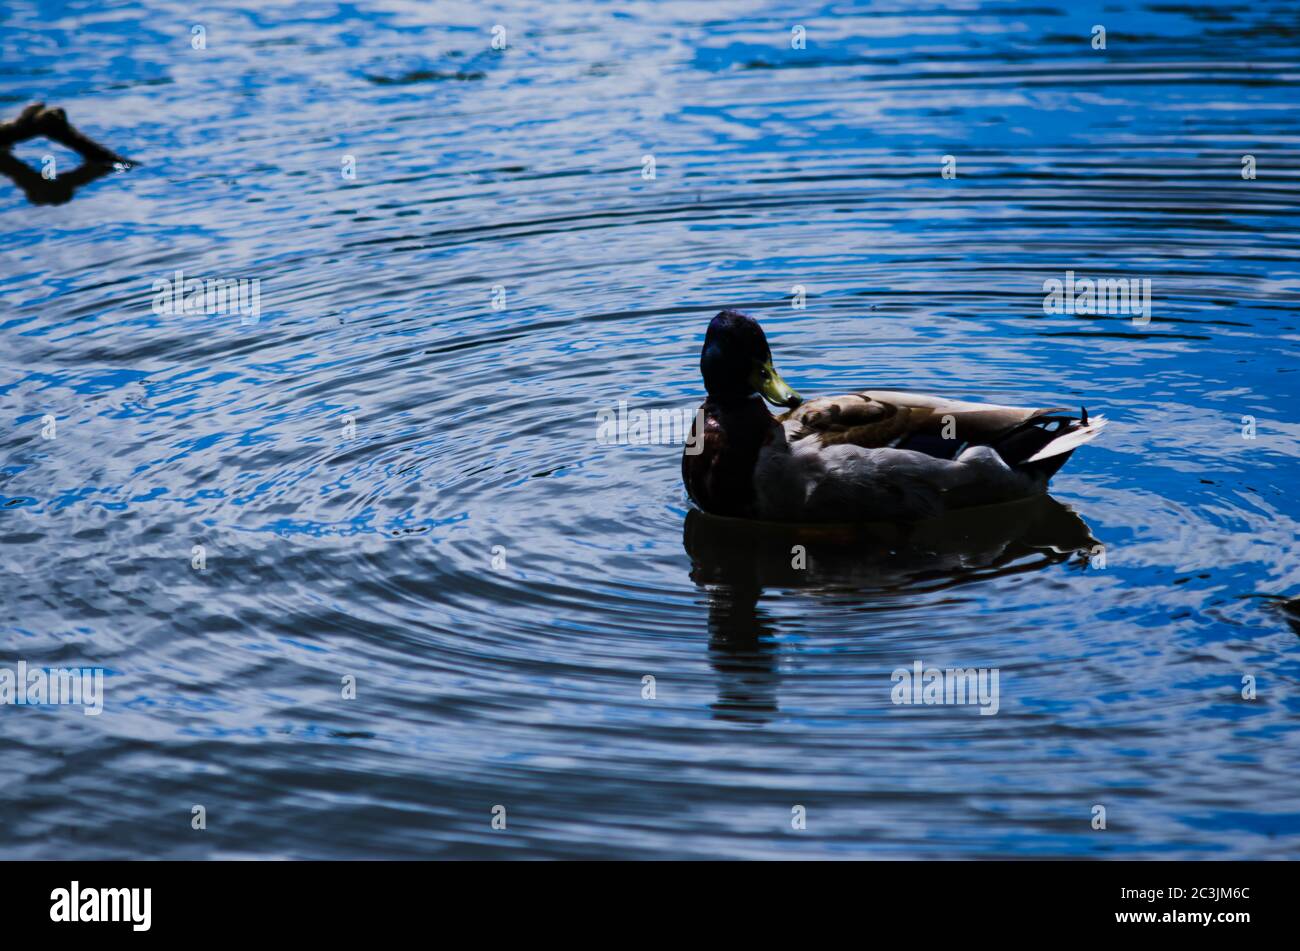 Canada goose on Wardown's Park Lake, Luton at dawn. Stock Photo